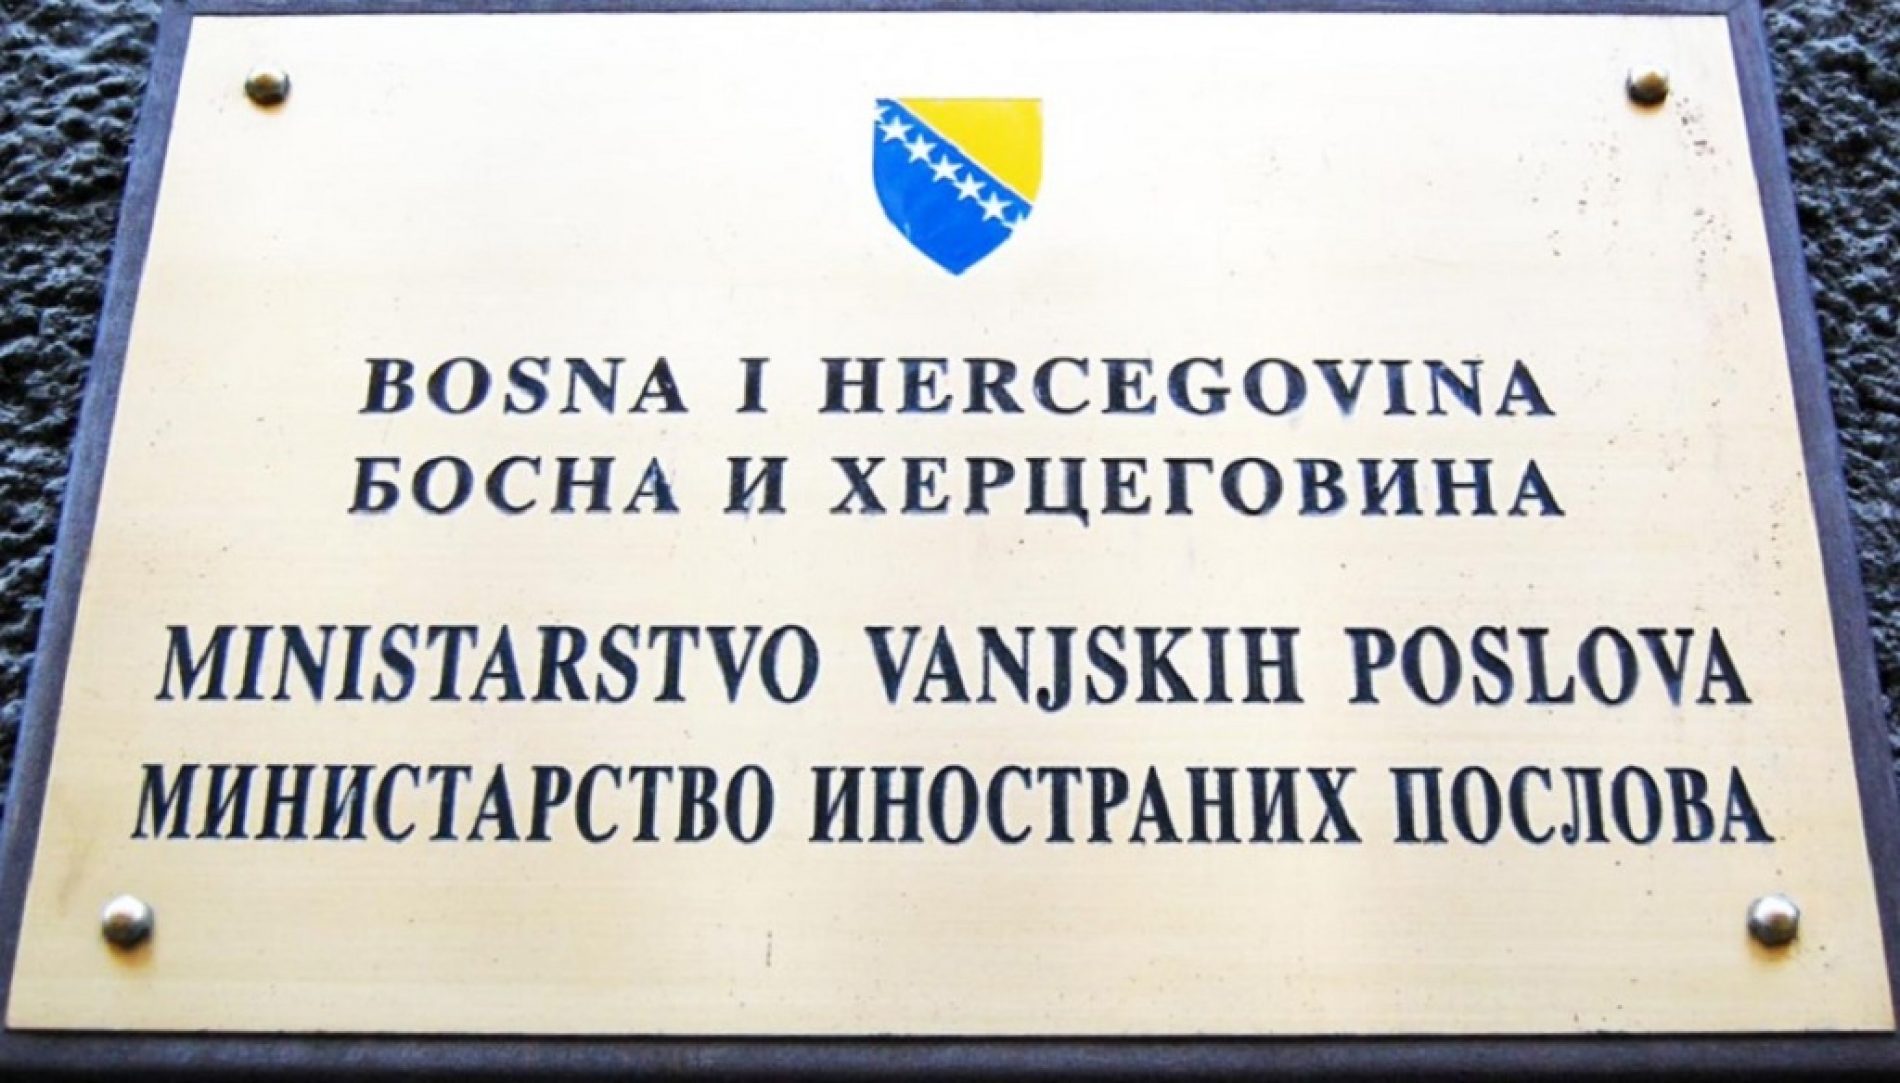 Demarš Ministarstva vanjskih poslova Bosne i Hercegovine Republici Hrvatskoj